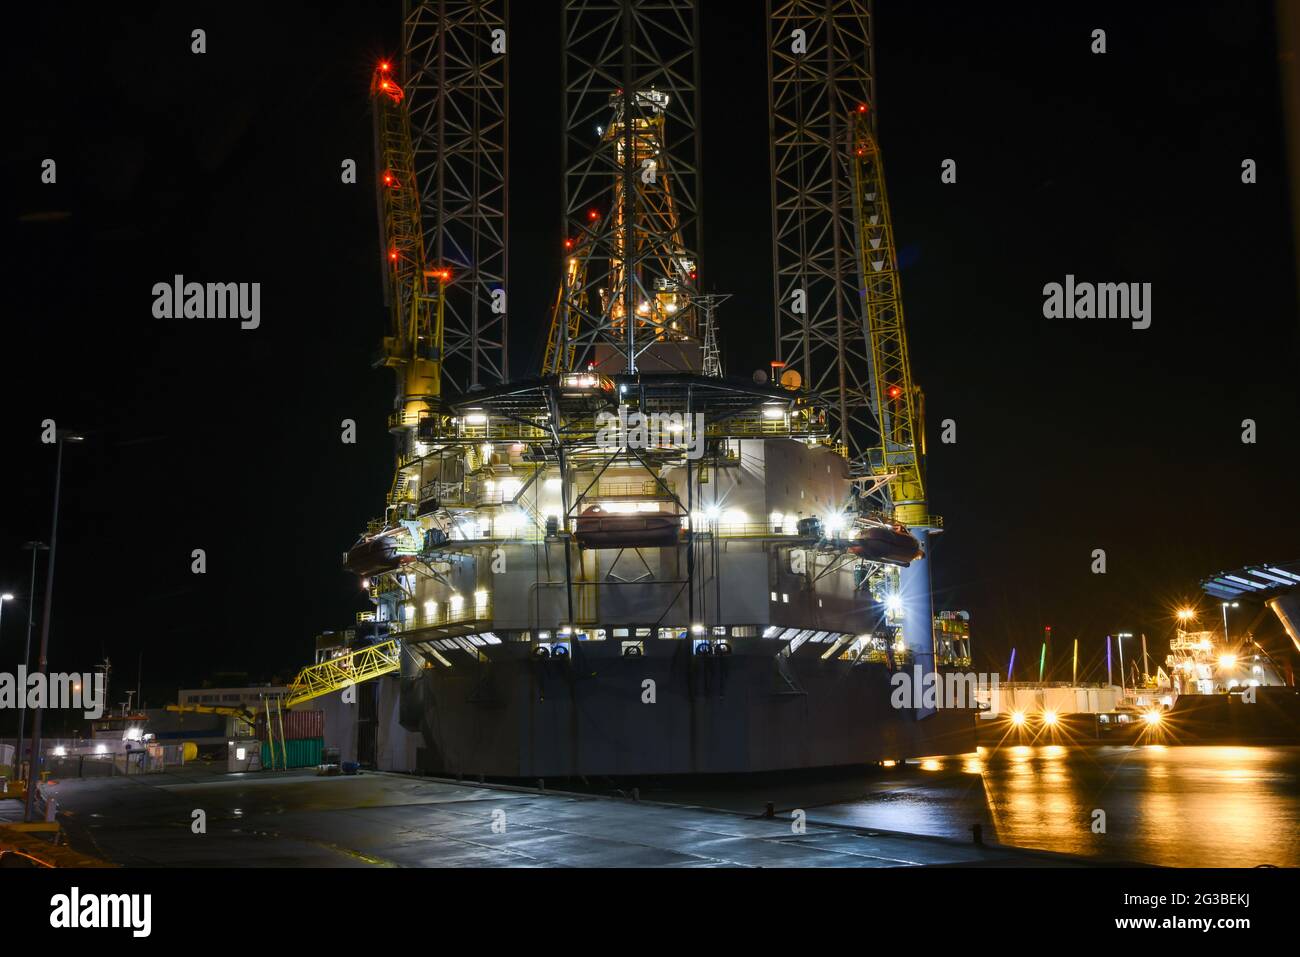 Den Helder, Niederlande. November 2019. Hafenstimmung. Ein Ölstand und ein Nachtschalender im Hafen von Den Helder, Niederlande. Hochwertige Fotos Stockfoto